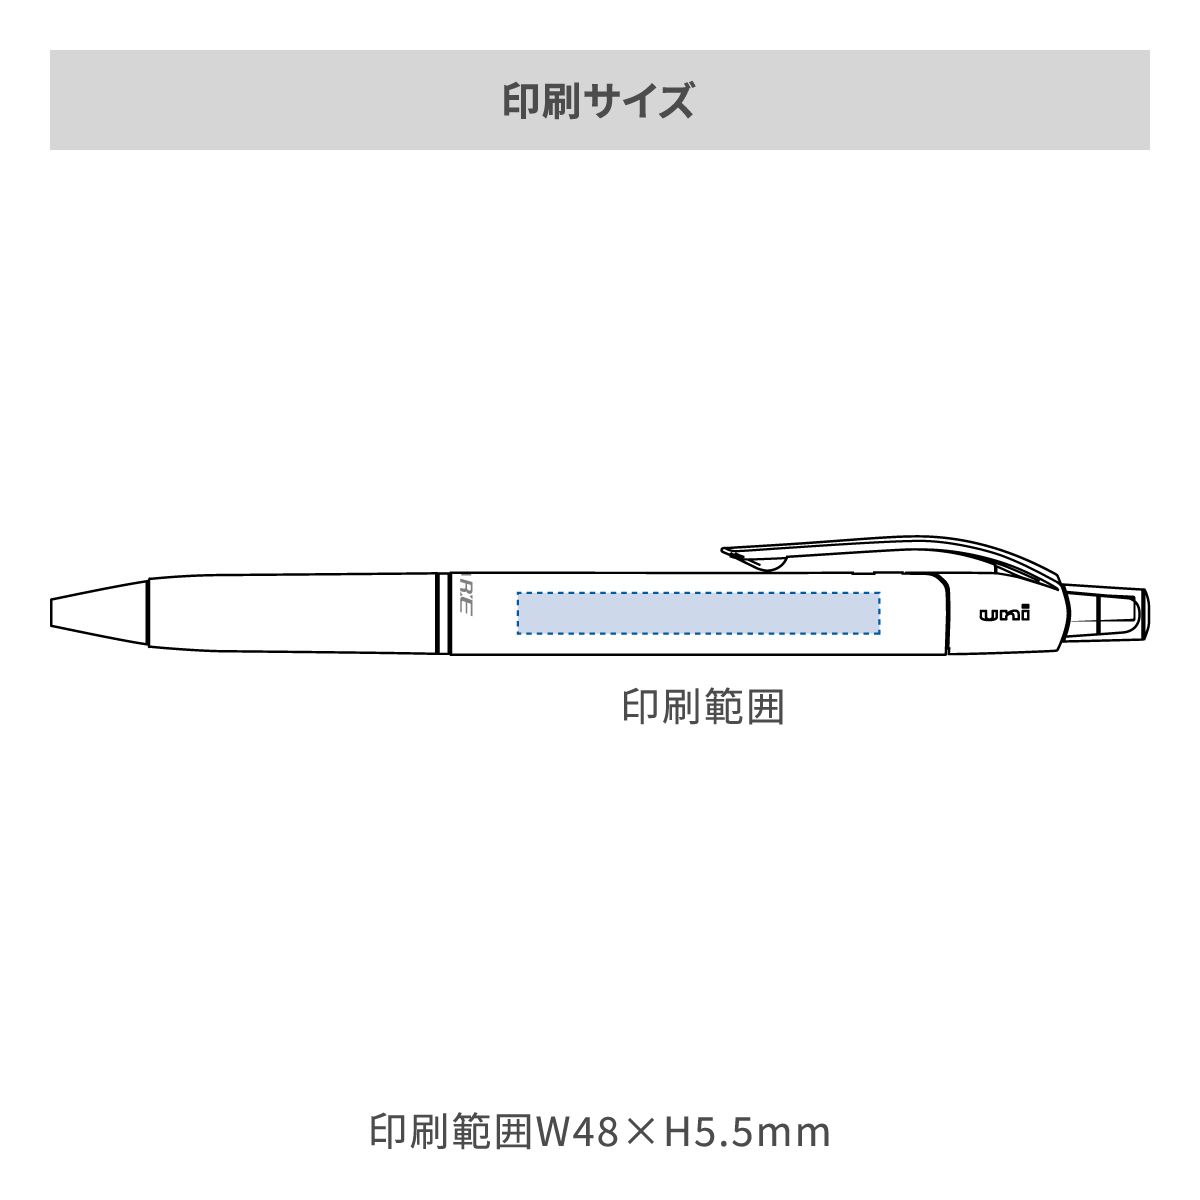 三菱鉛筆 ユニボール アールイー 白軸 0.5mm【名入れボールペン / パッド印刷】 画像2